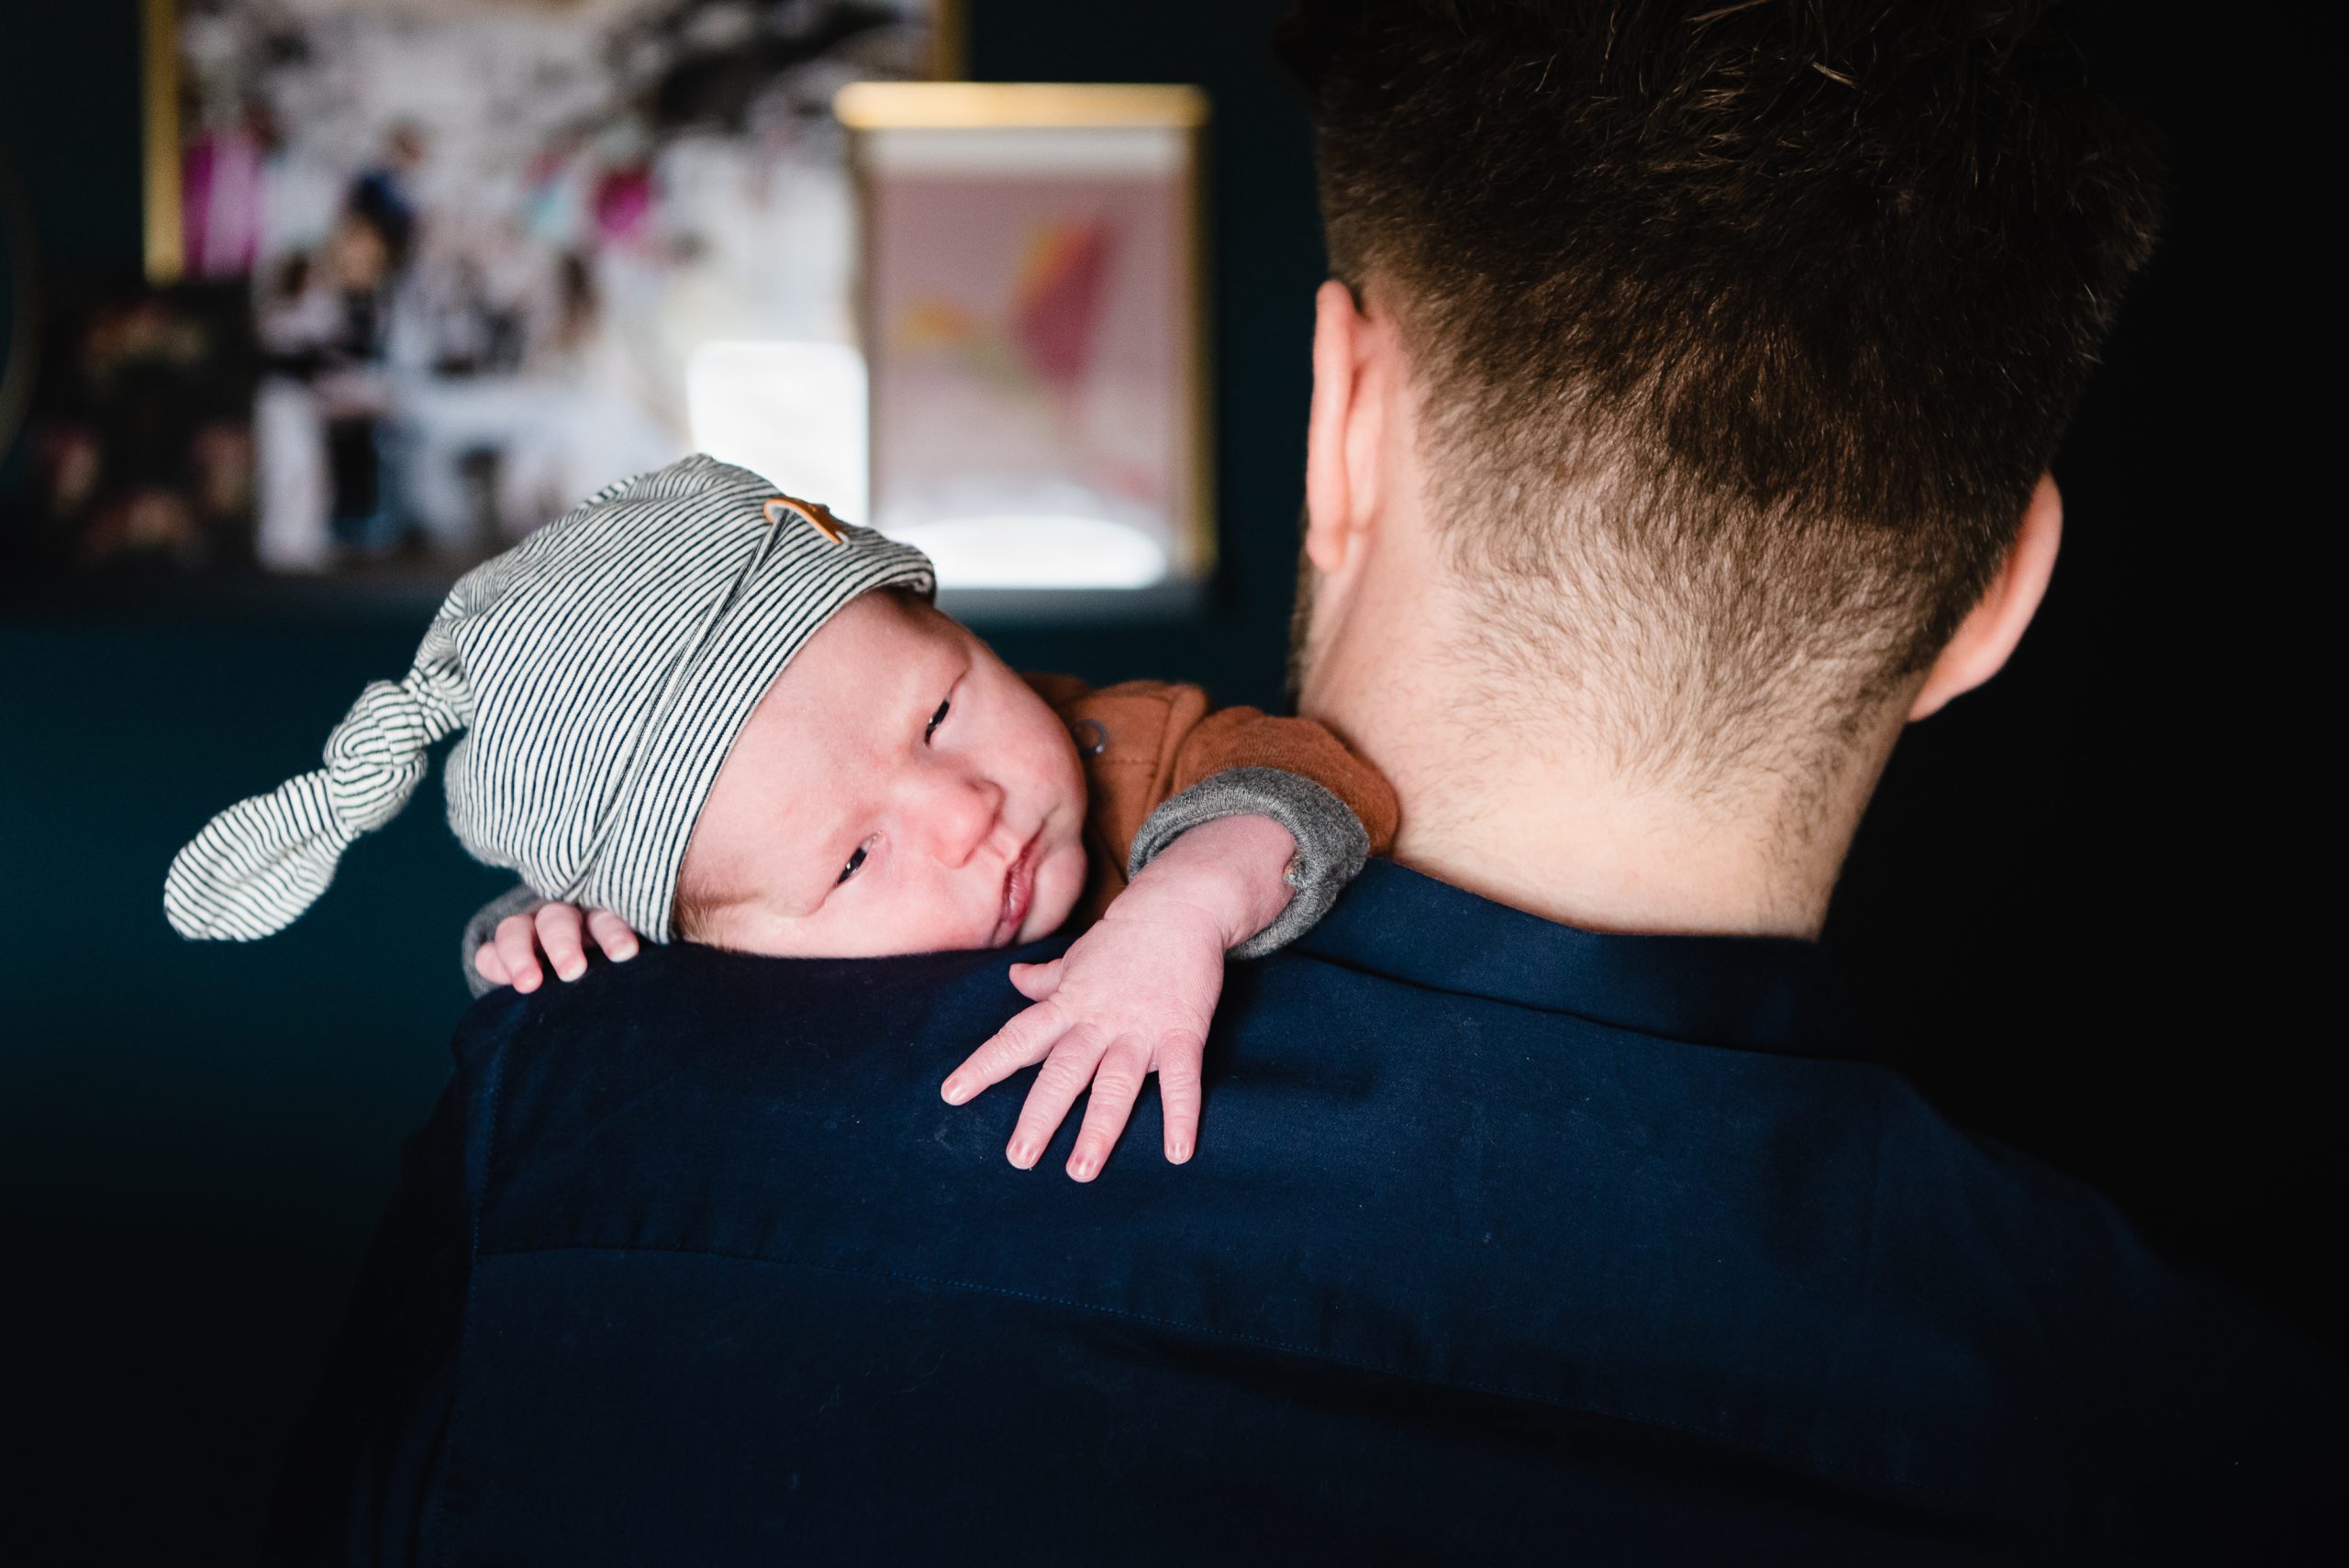 newborn fotografie, familliefotograaf Assen, gezinsfotograaf Assen, fotograaf Assen, lekker uitrusten bij papa, ongeposseerd, vastleggen zoals het leven is.